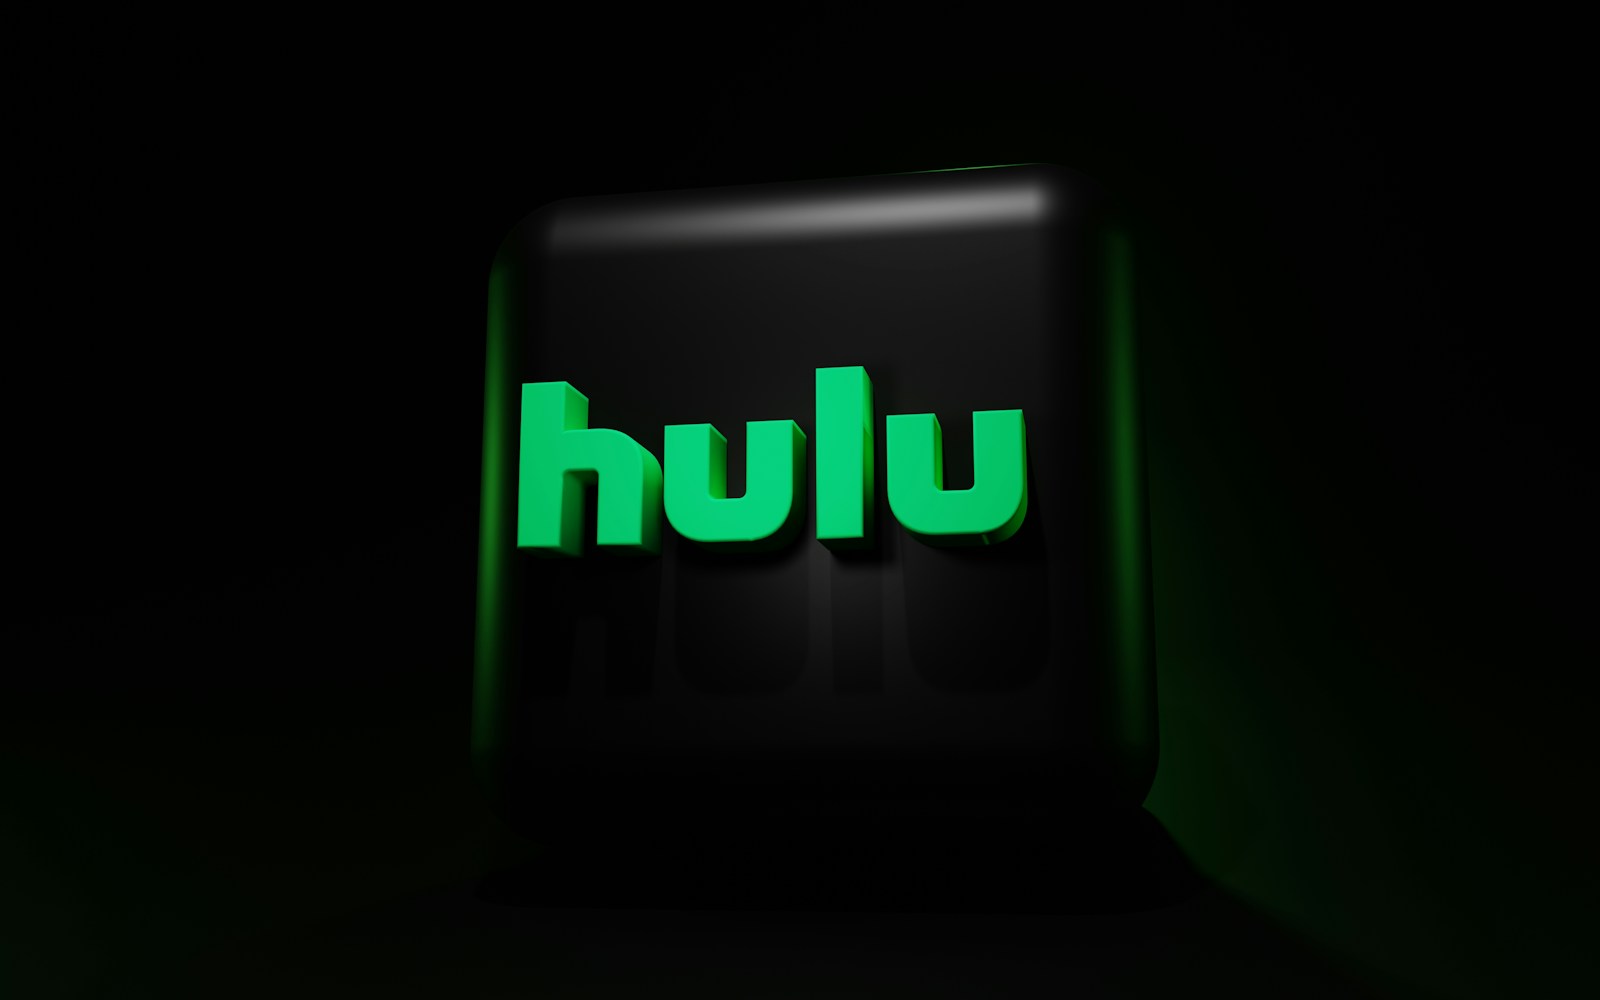 a green neon sign hulu